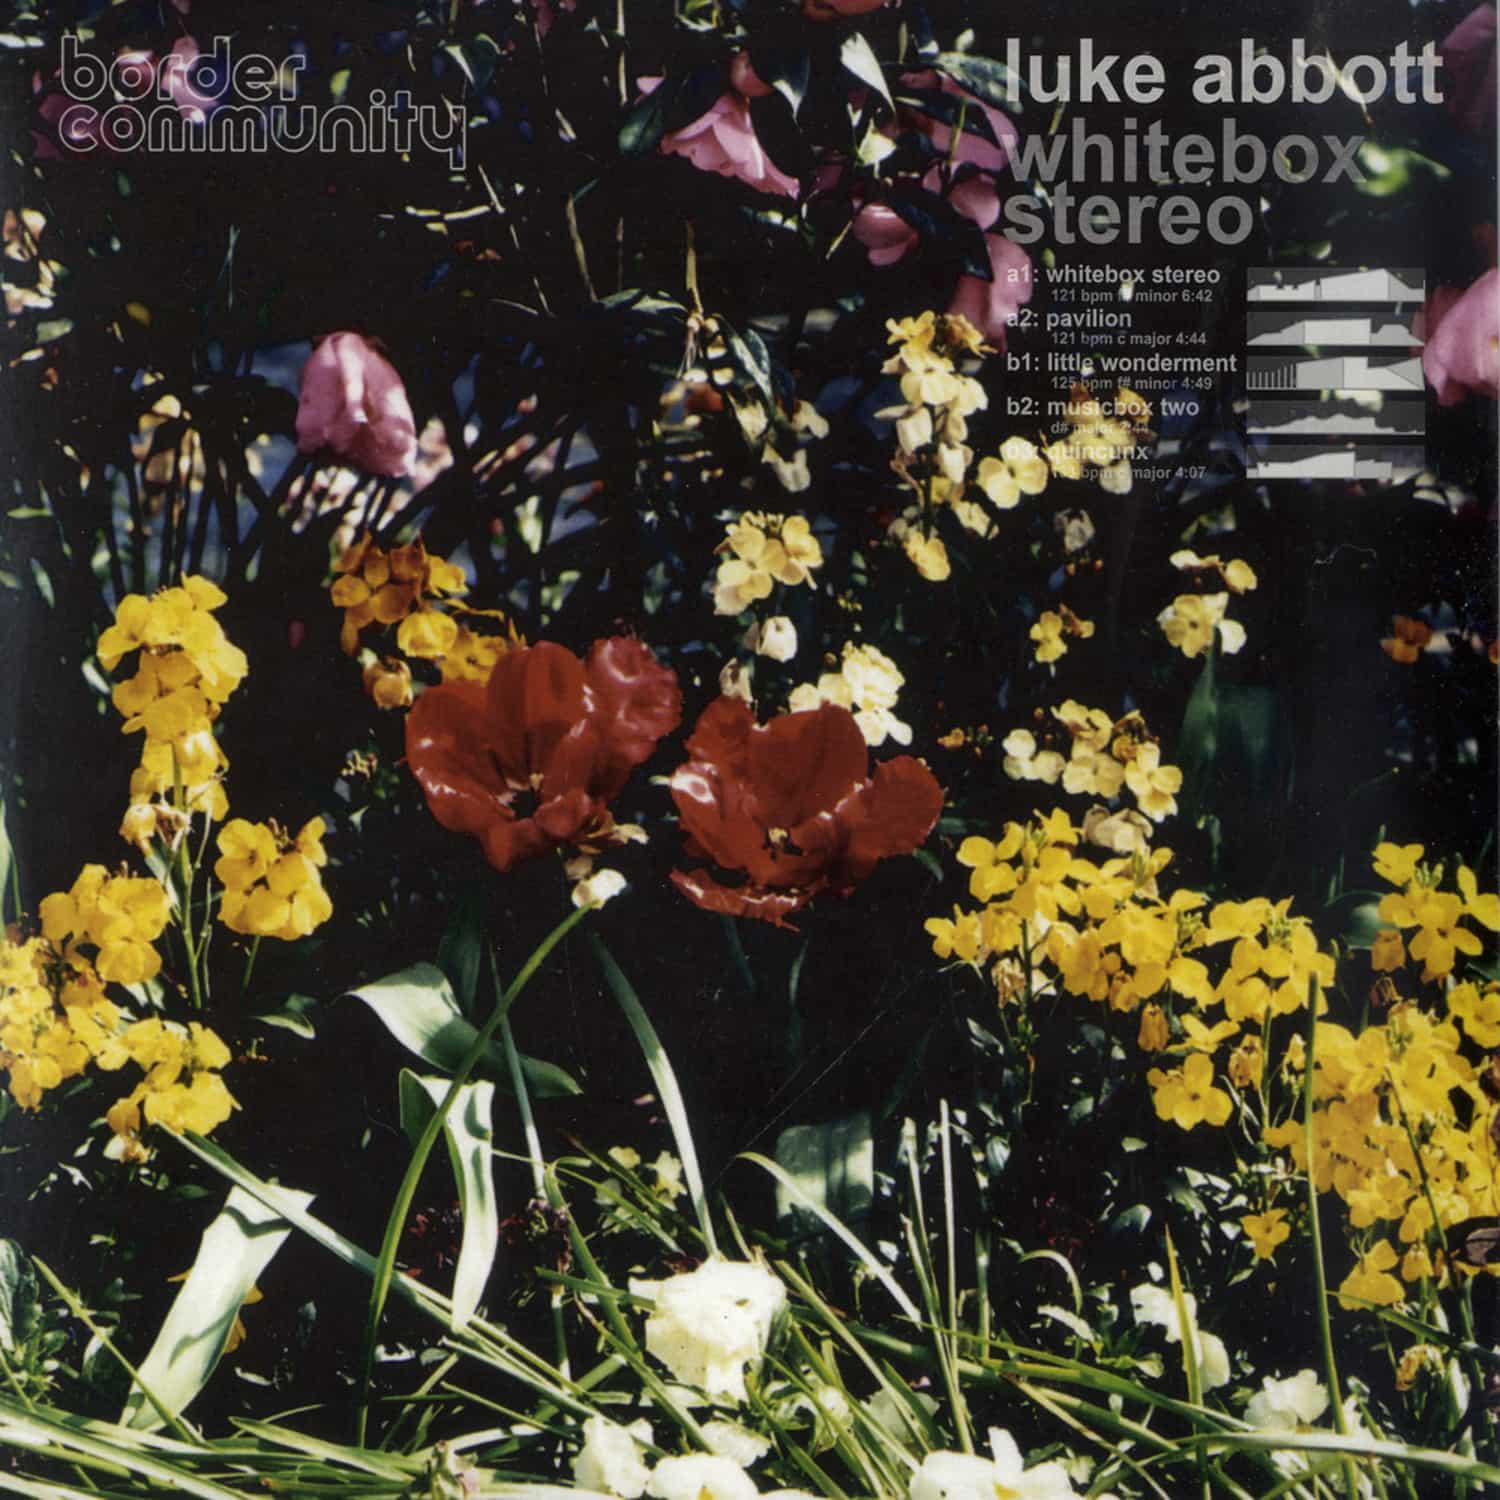 Luke Abbott - WHITEBOX STEREO